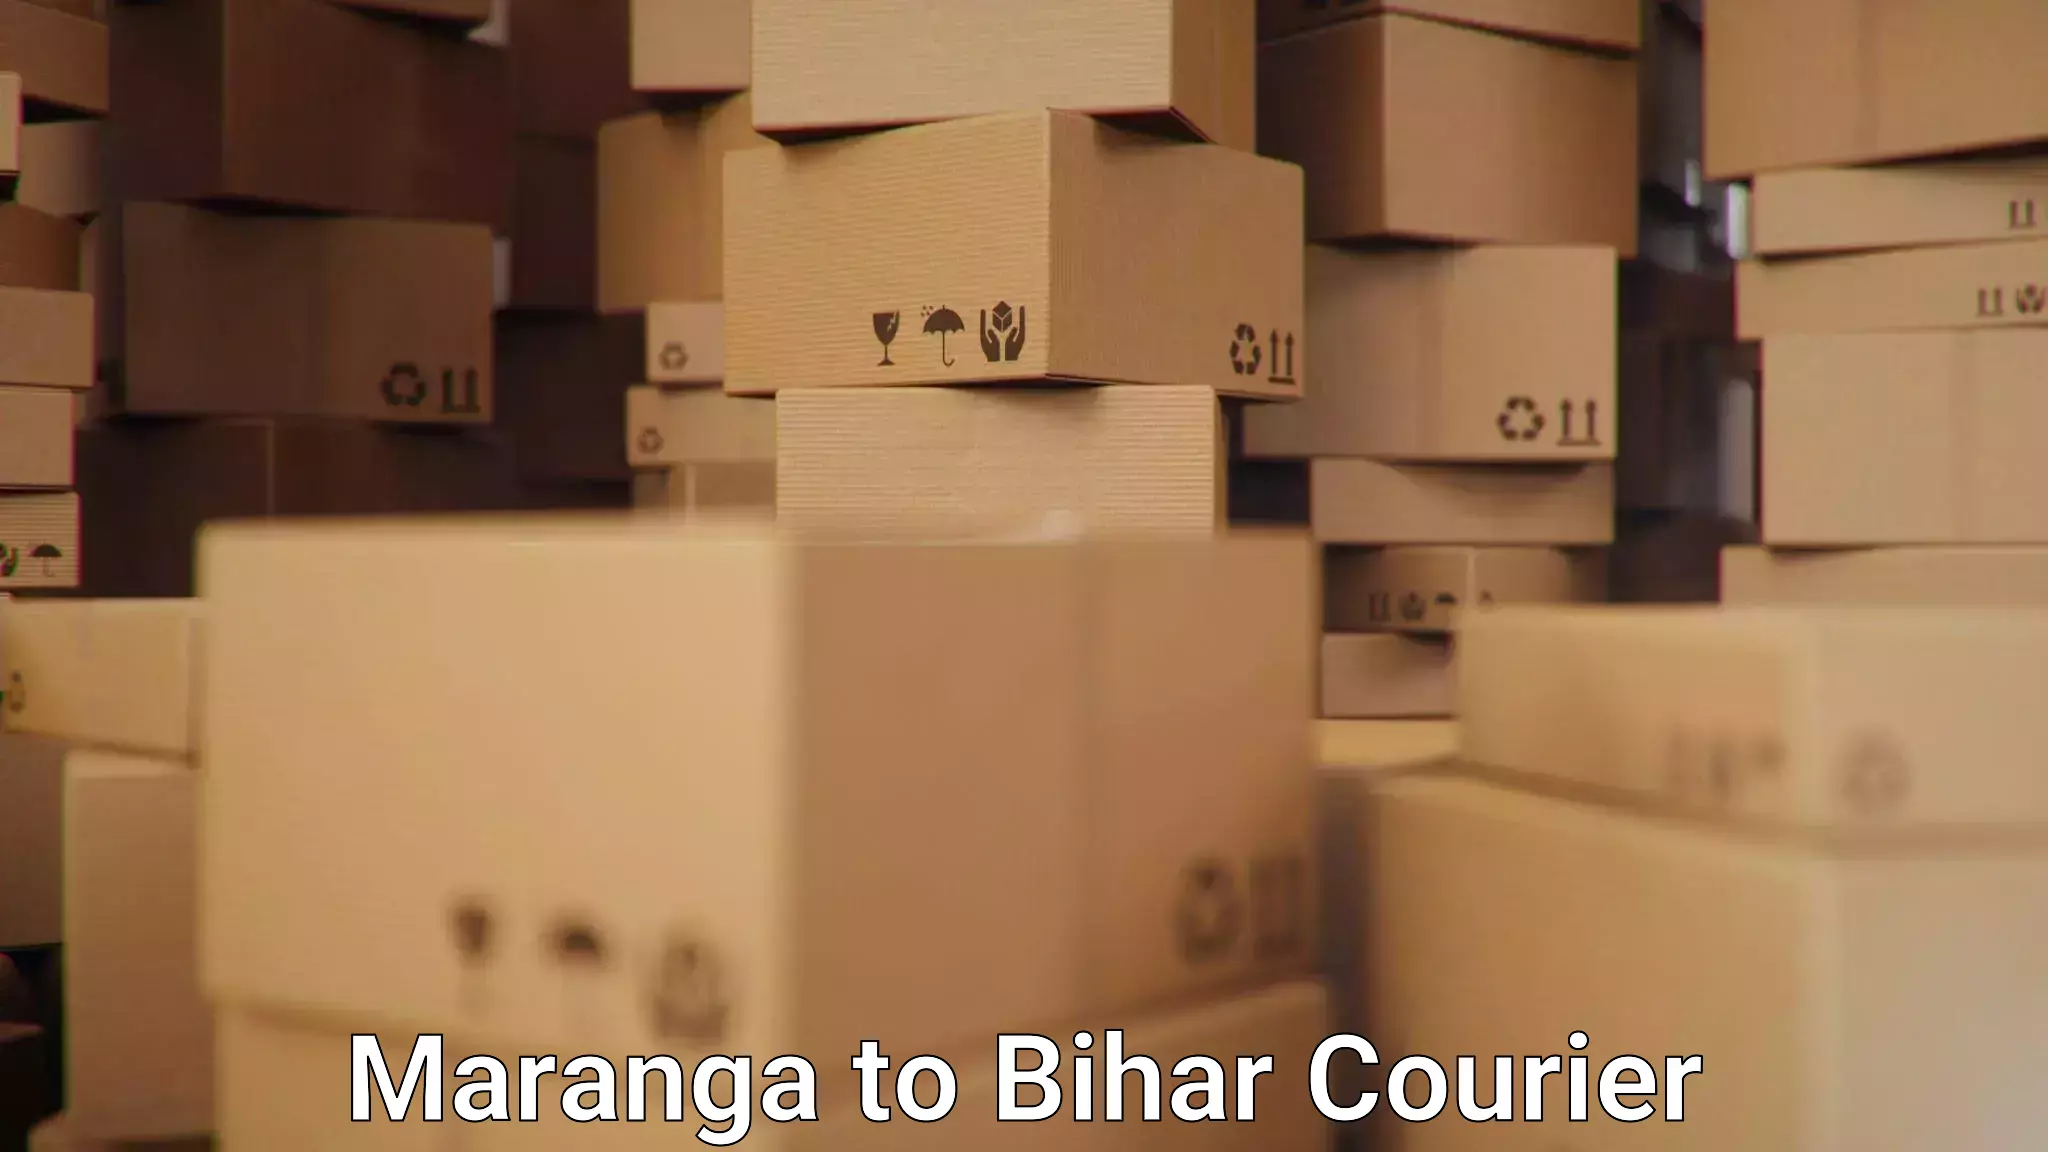 Pharmaceutical courier Maranga to Bihar